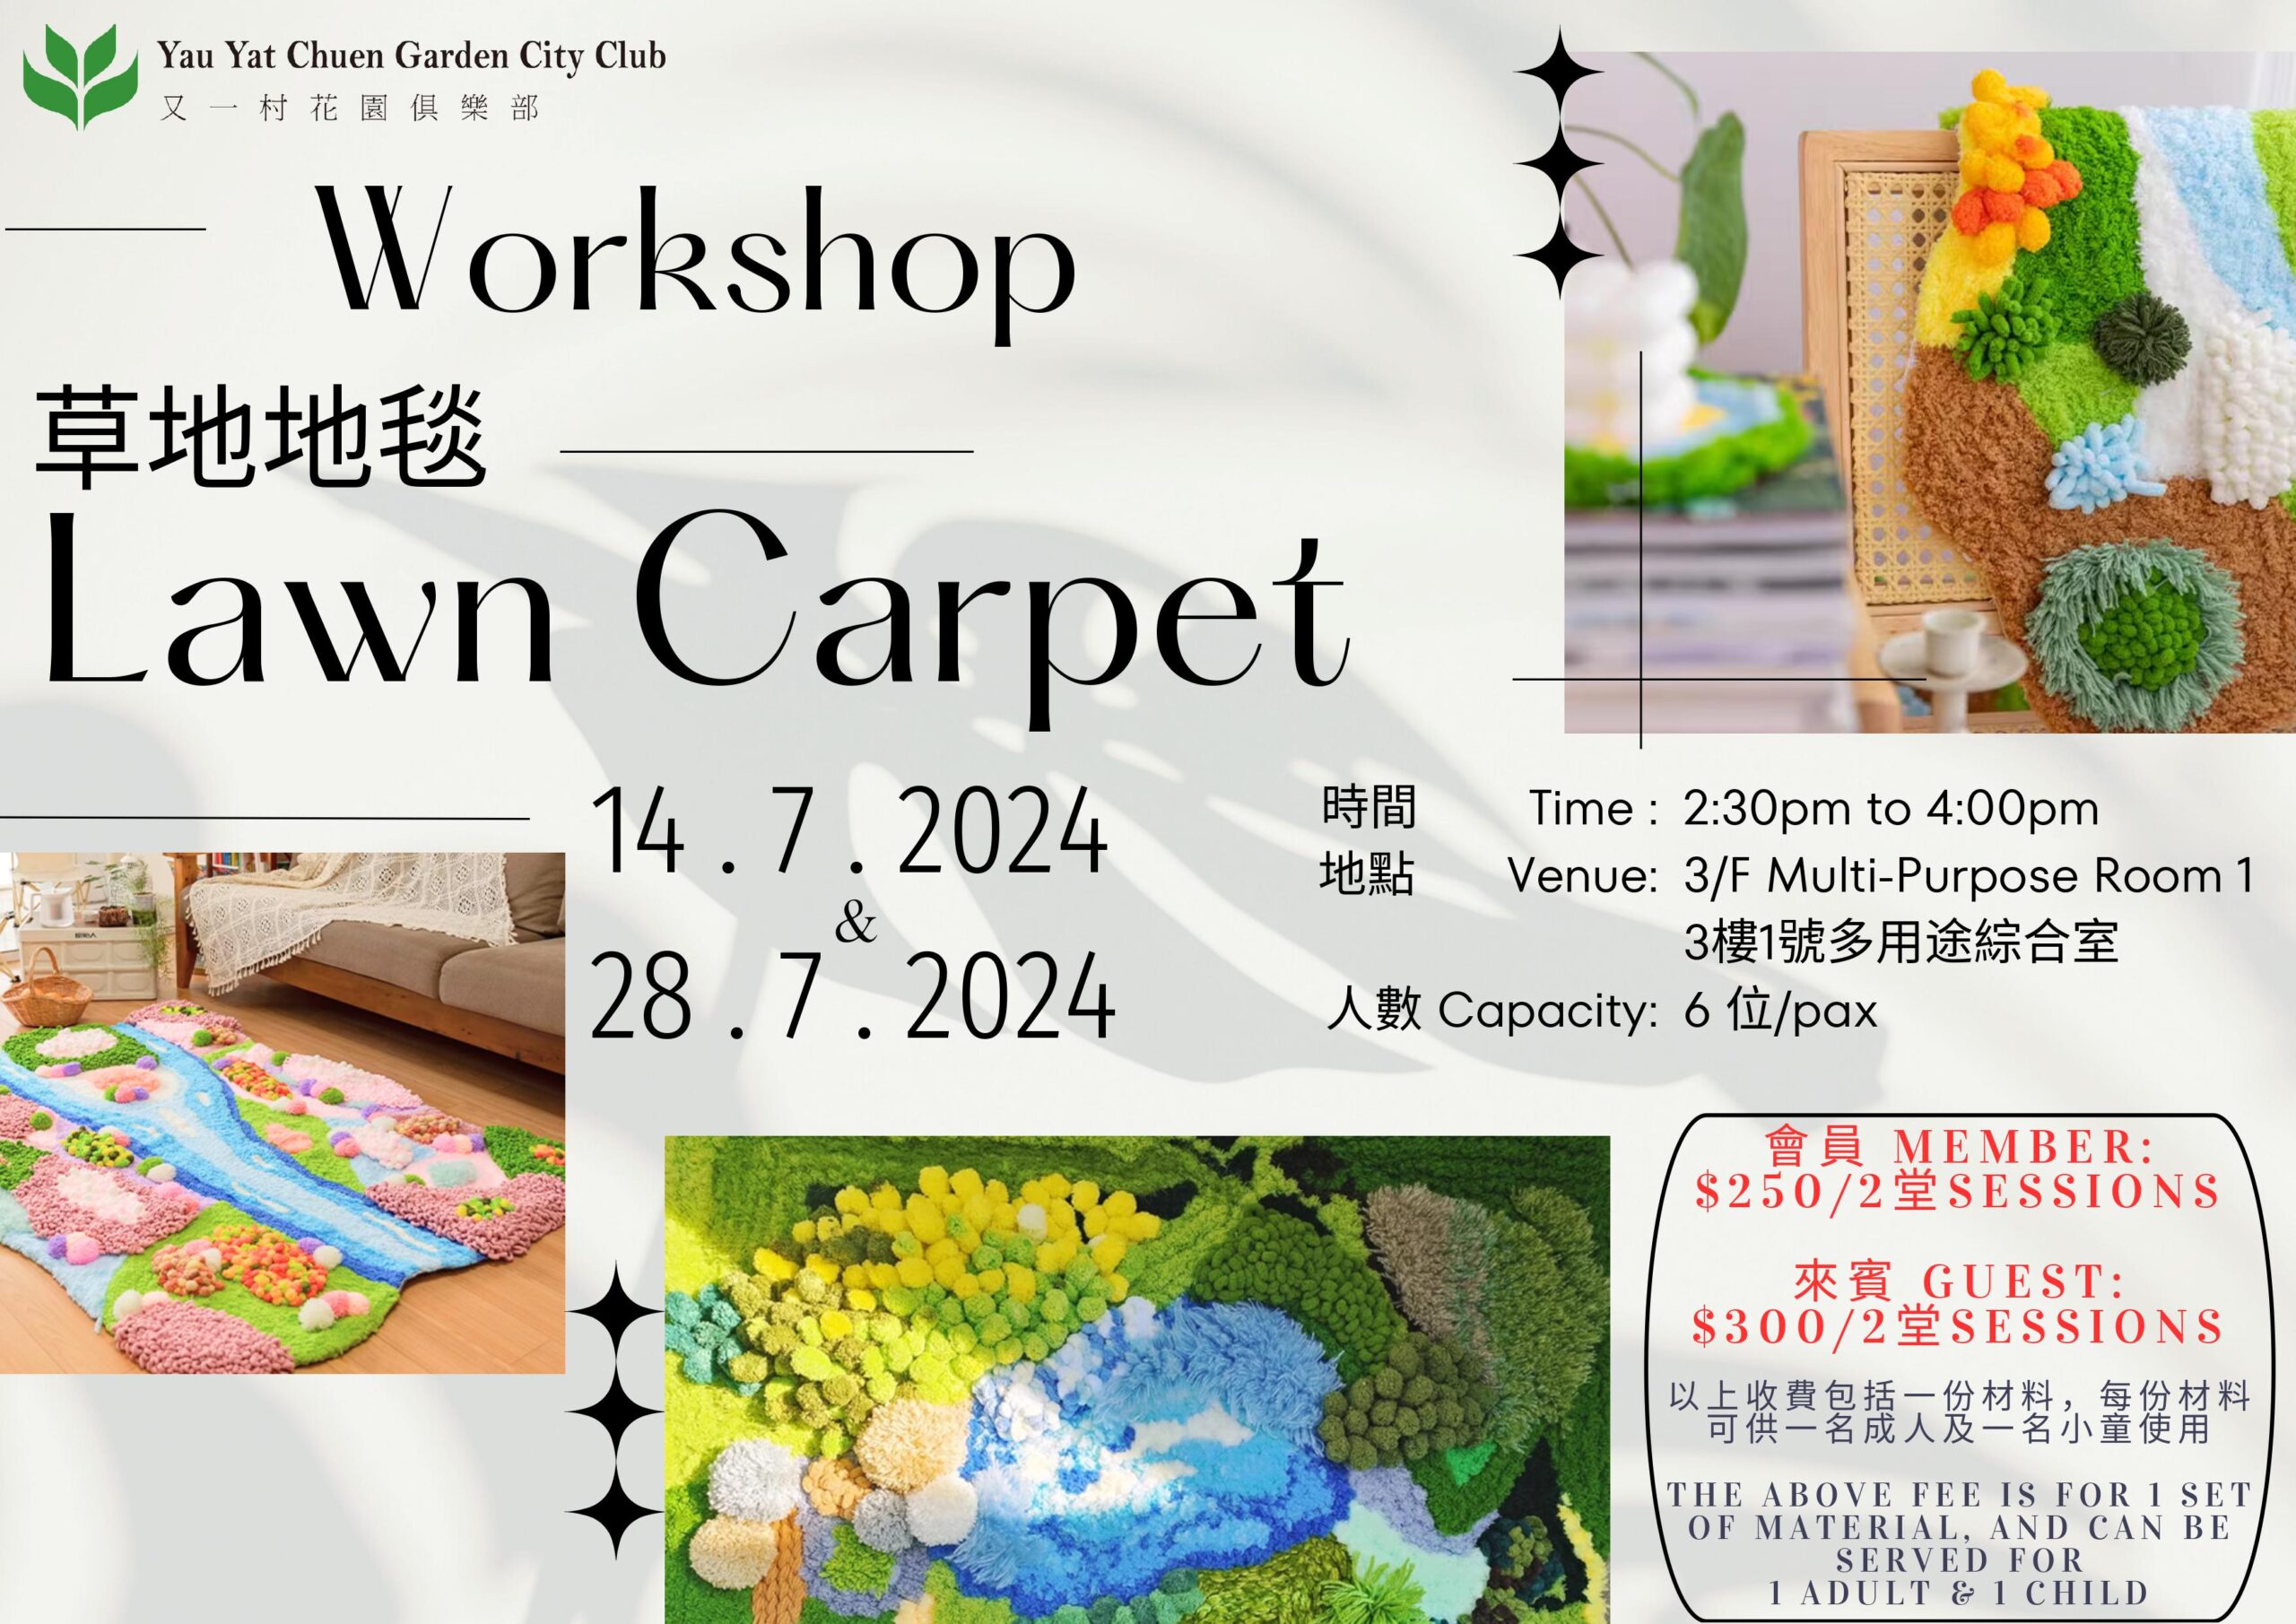 Lawn Carpet Workshop